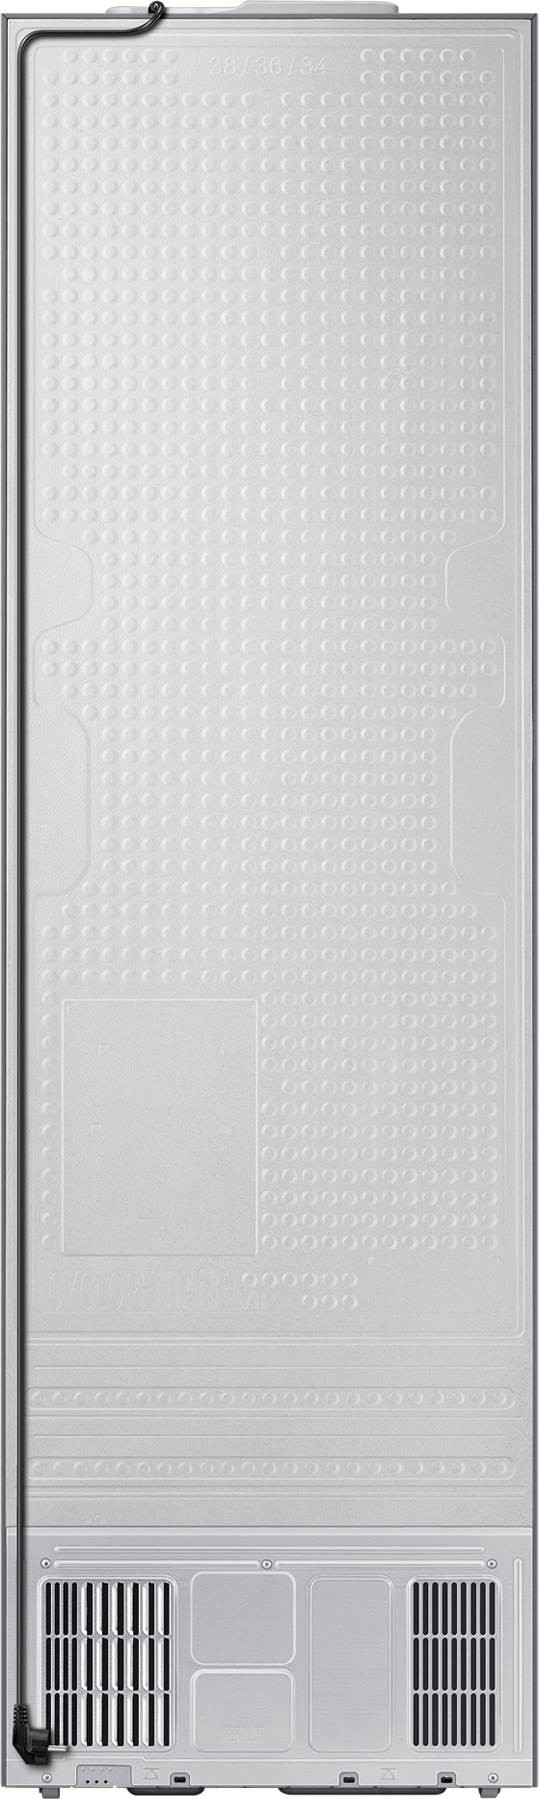 SAMSUNG Réfrigérateur congélateur bas No Frost Multi-Flow 390L Gris - RB38C602CSA